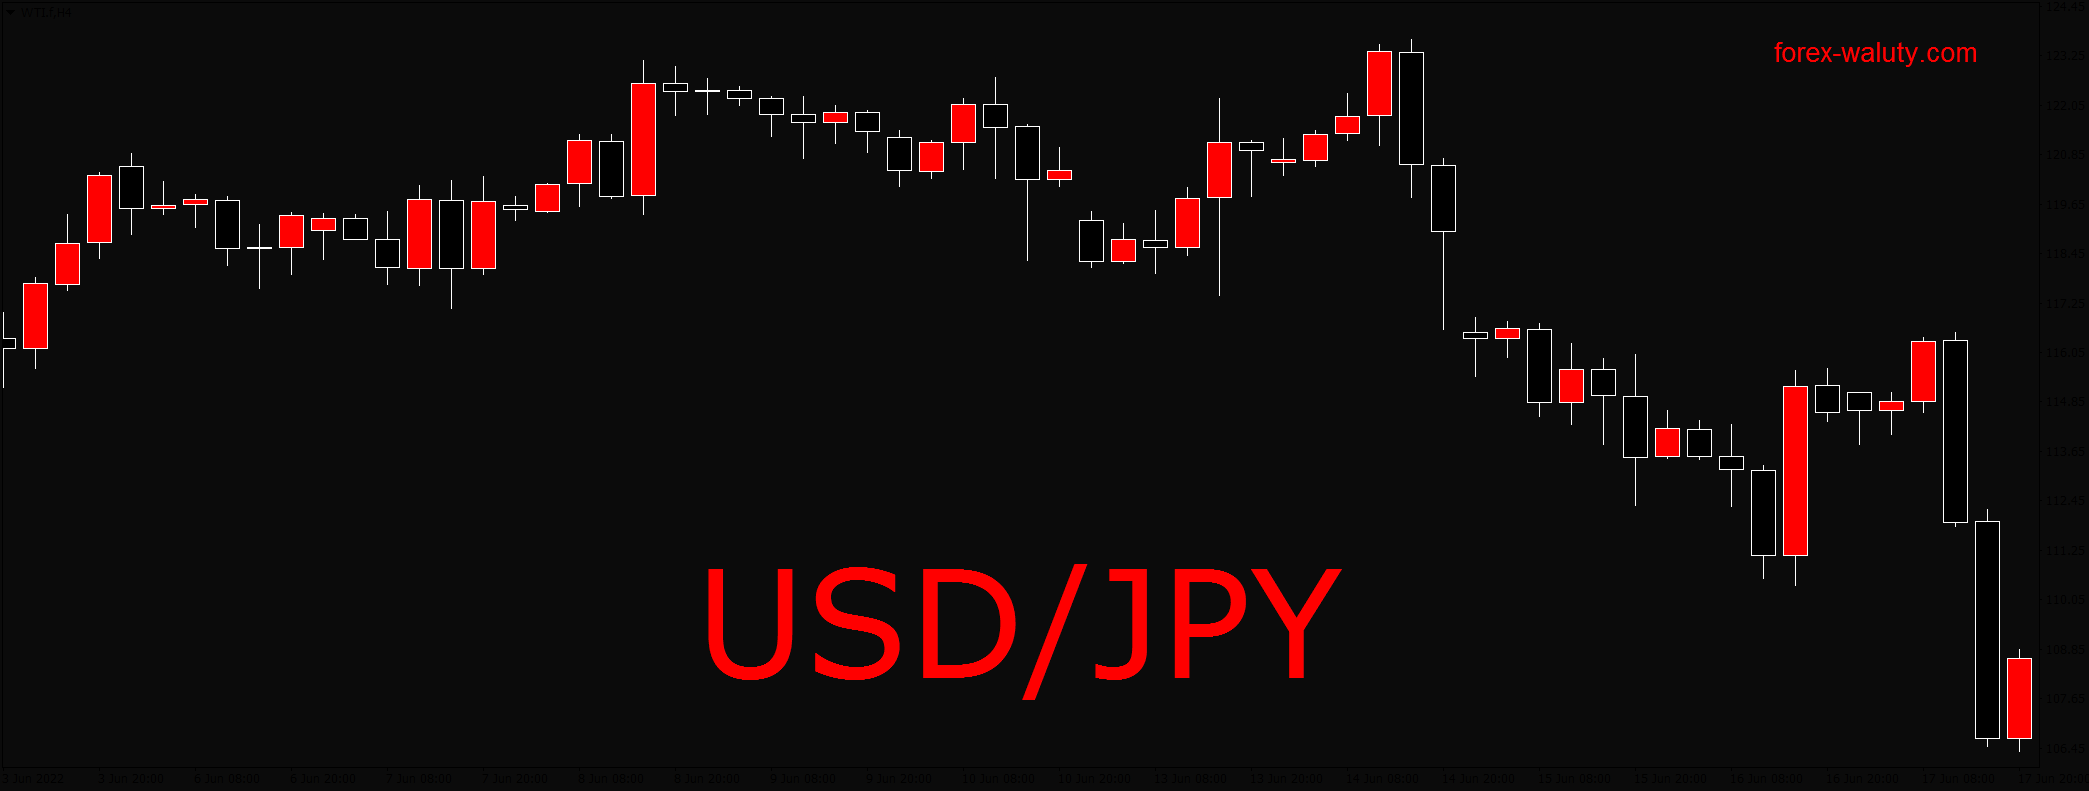 USD/JPY druga podstawowa para walutowa rynku forex